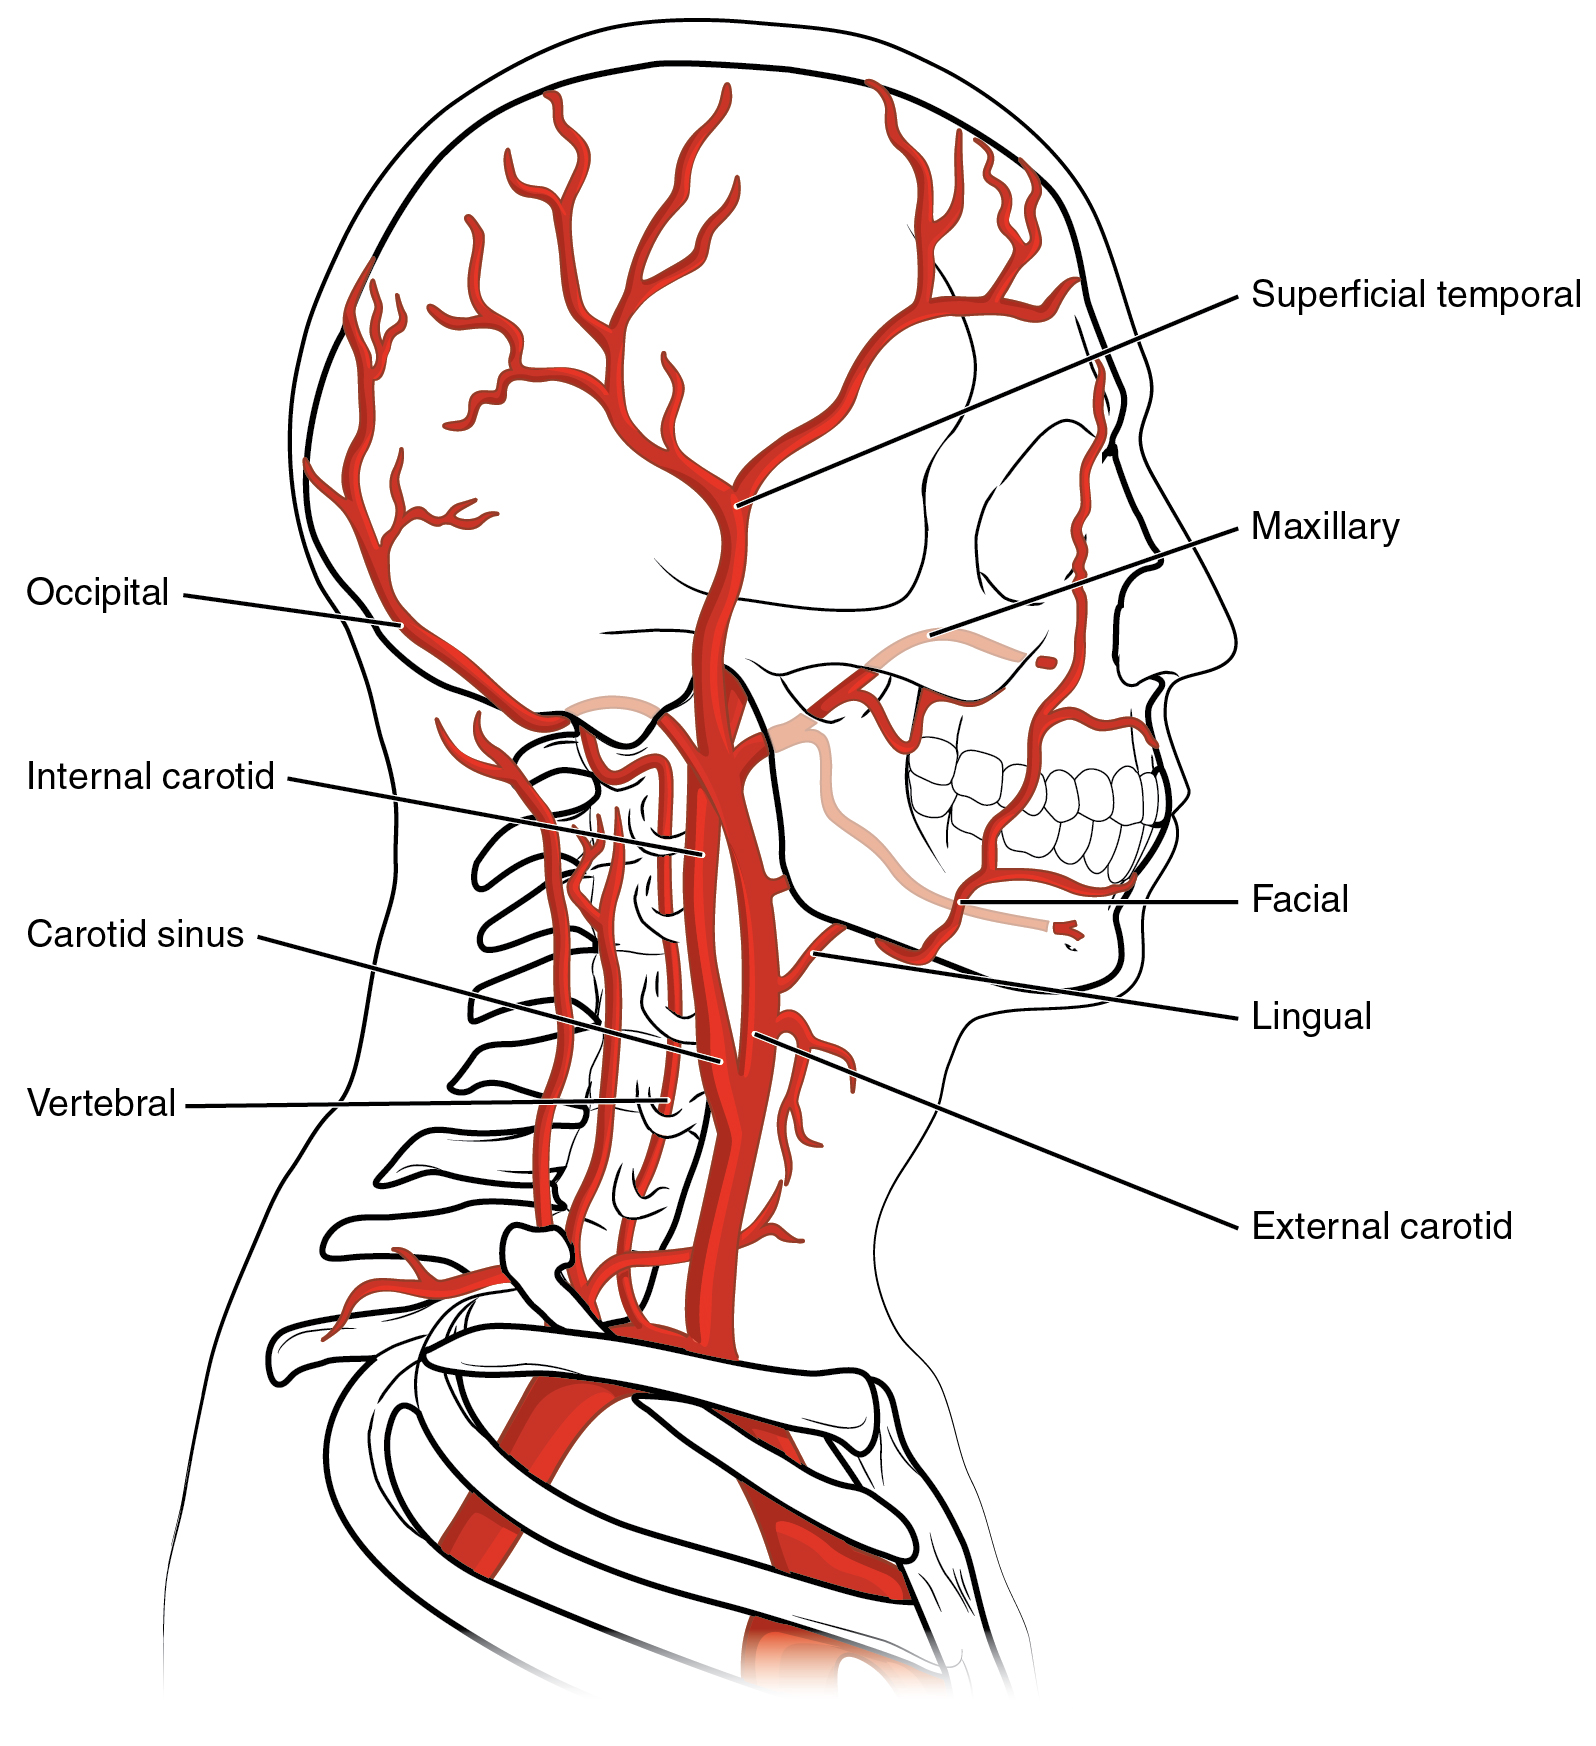 Este diagrama mostra os vasos sanguíneos na cabeça e no cérebro.